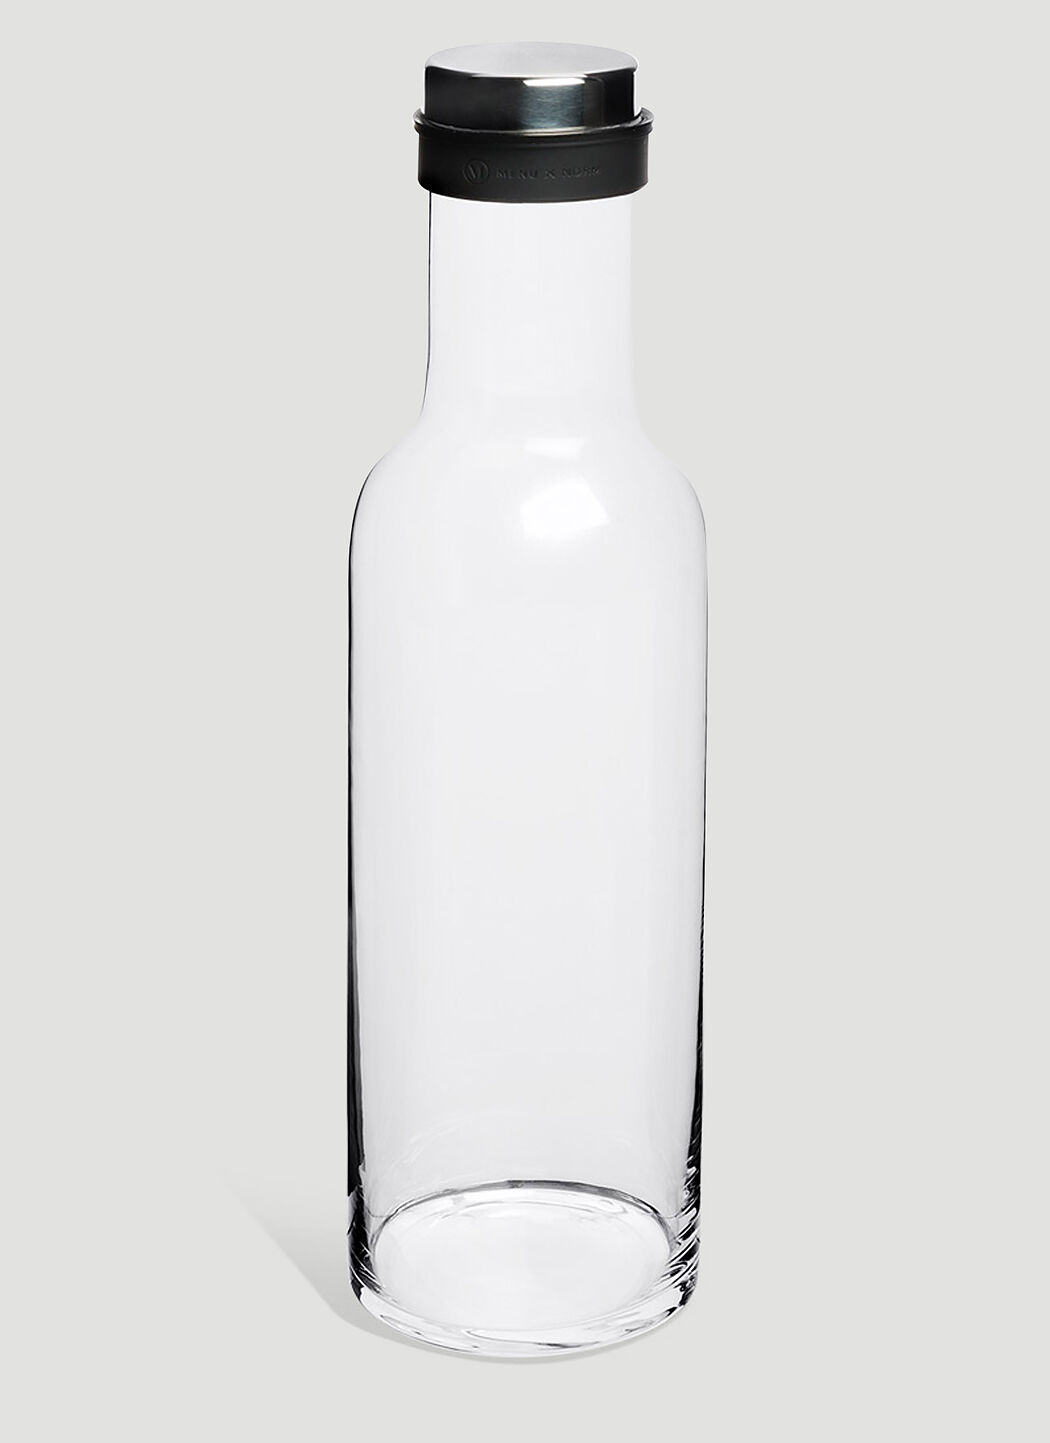 Audo Copenhagen Bottle White wps0638328